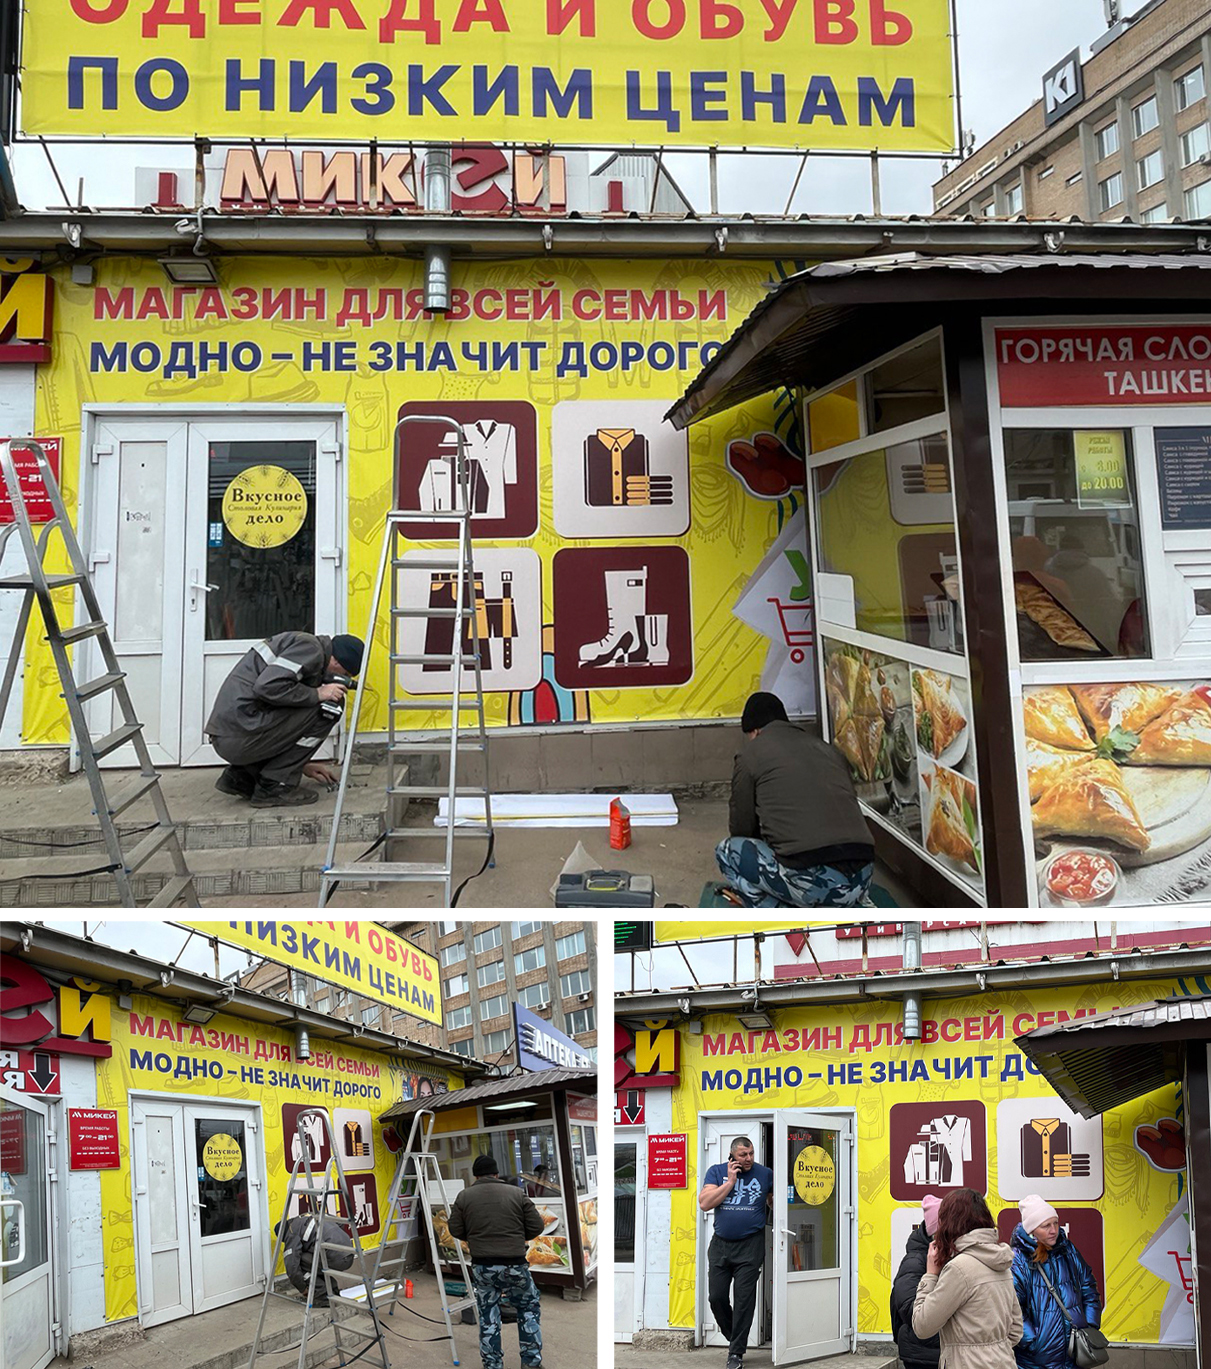 Оформление входной группы для магазина «Одежда и обувь» г. Смоленск, ул. Кашена 1а (от разработки макета до монтажа)